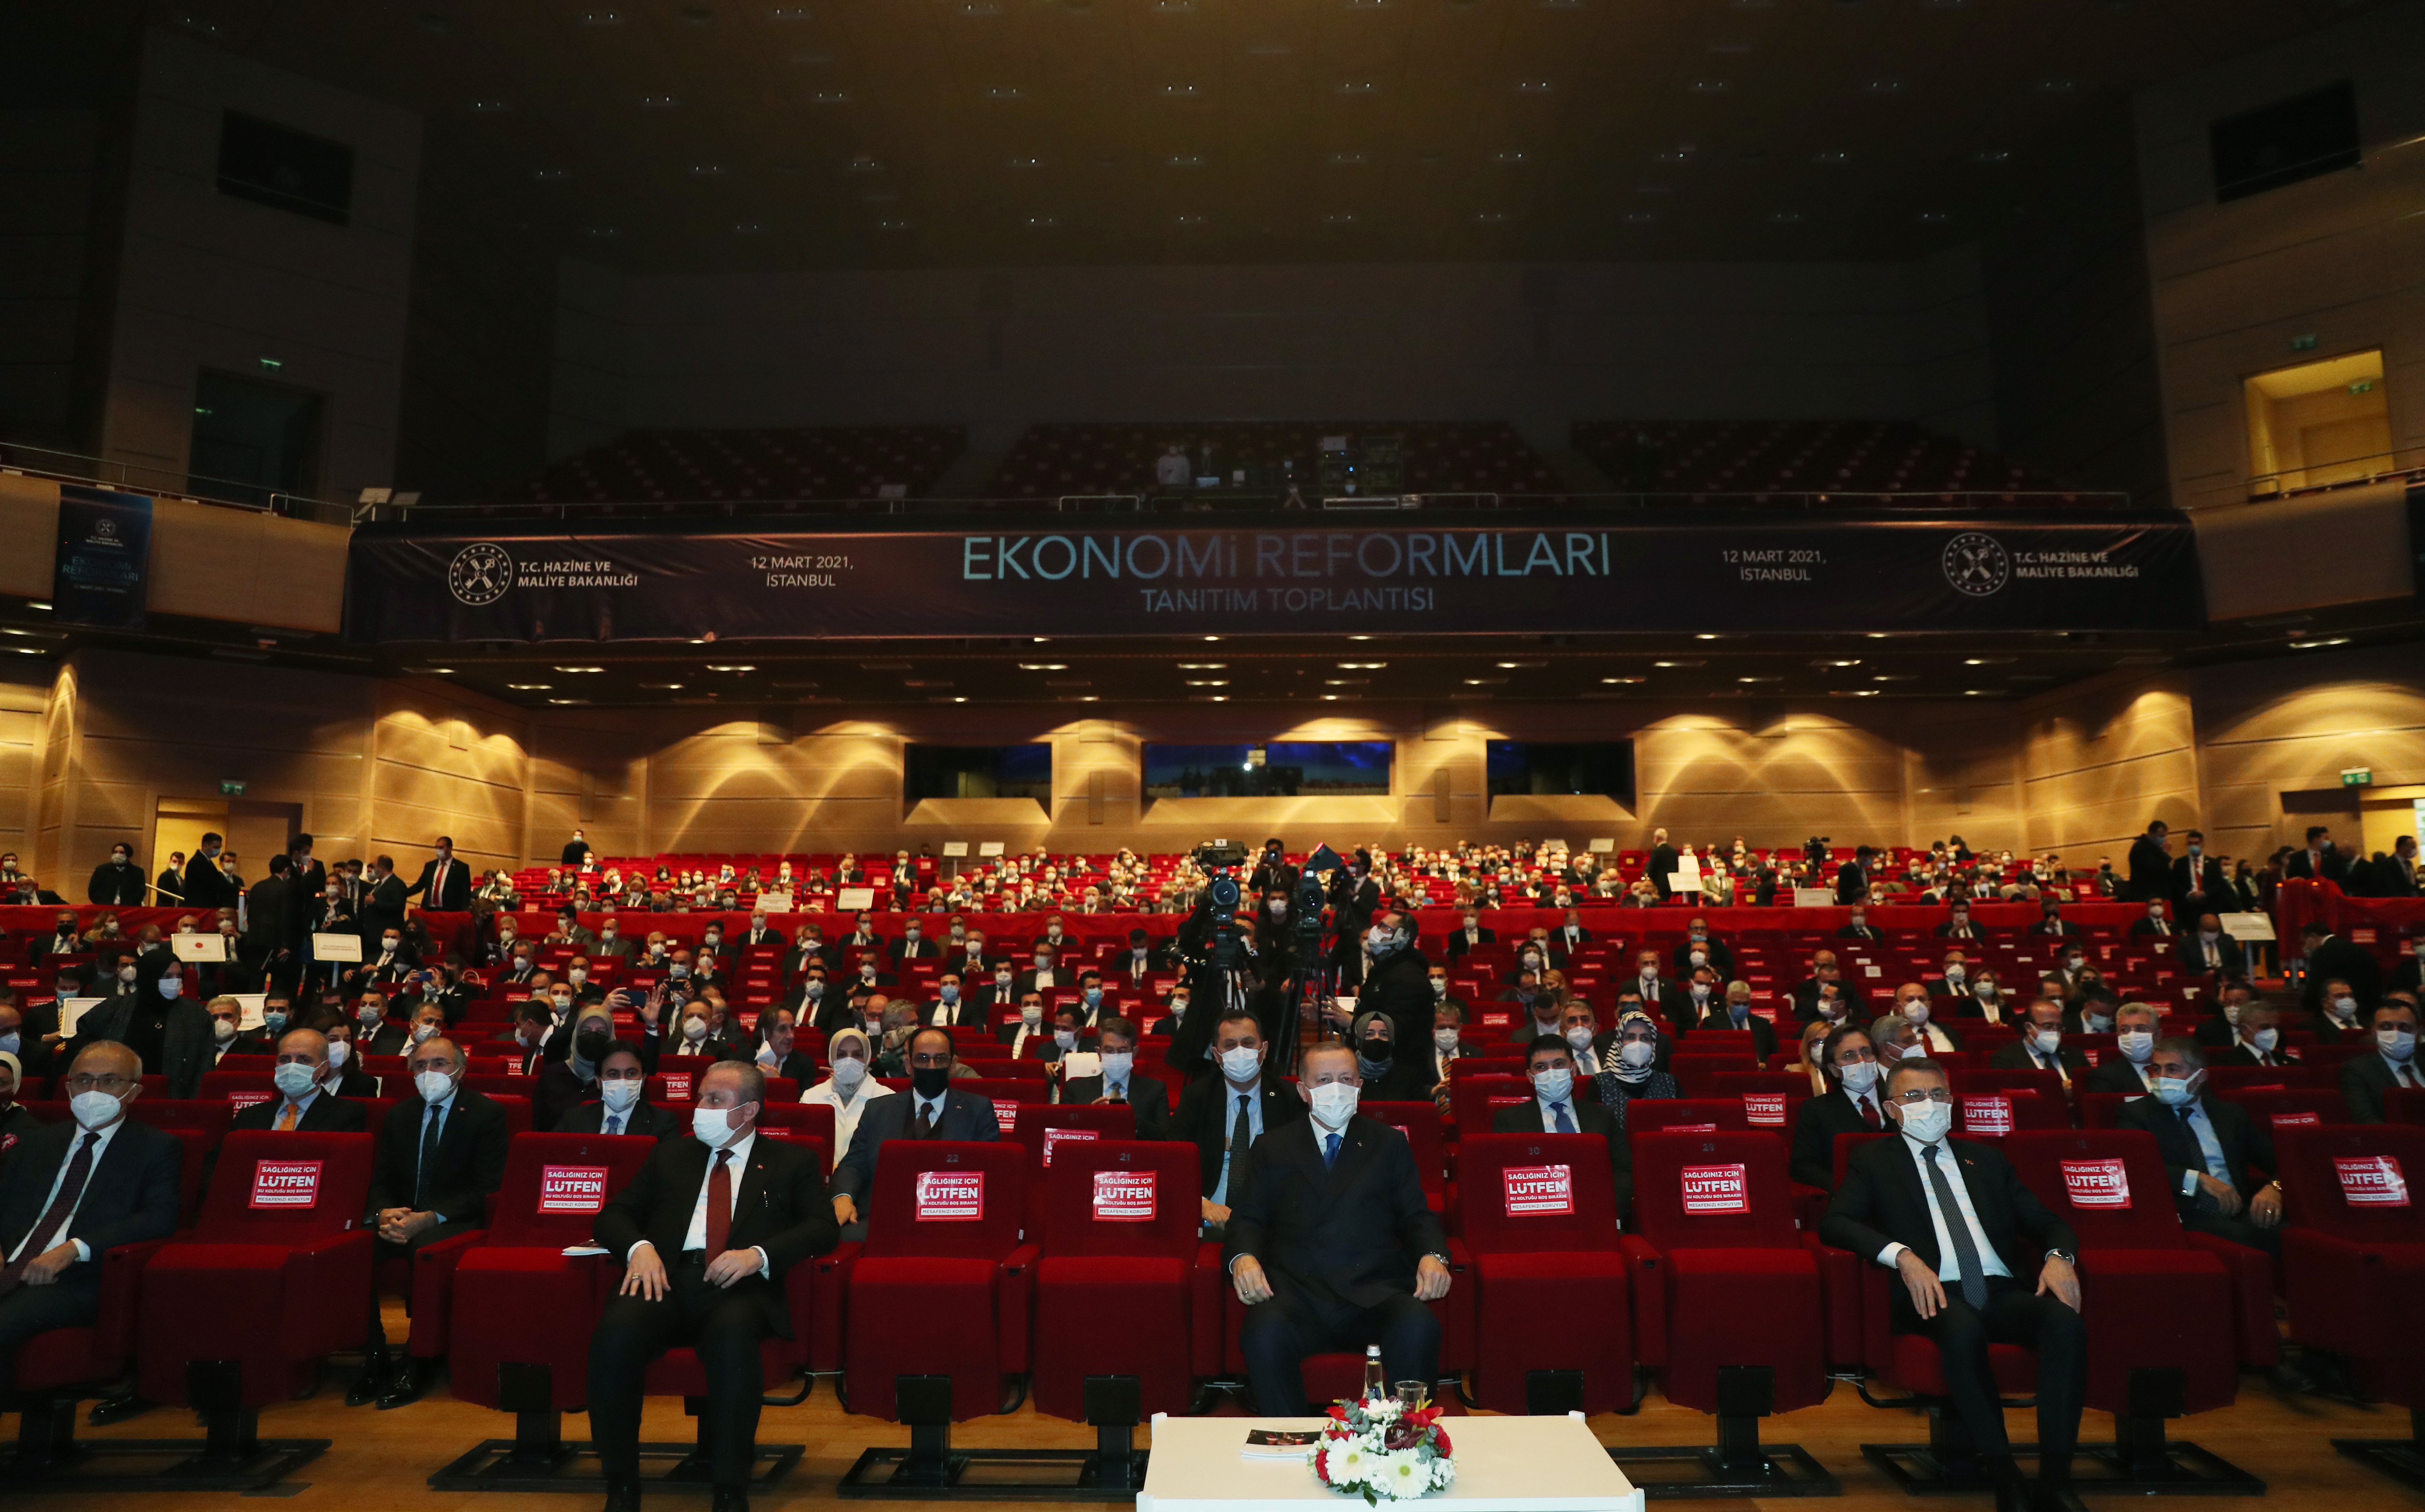 TOBB Yönetim Kurulu Üyesi ve Odamız Başkanı Hakan ÜLKEN, İstanbul Haliç Kongre Merkezi’nde düzenlenen Ekonomi Reformları Tanıtım Toplantısı’na katıldı.